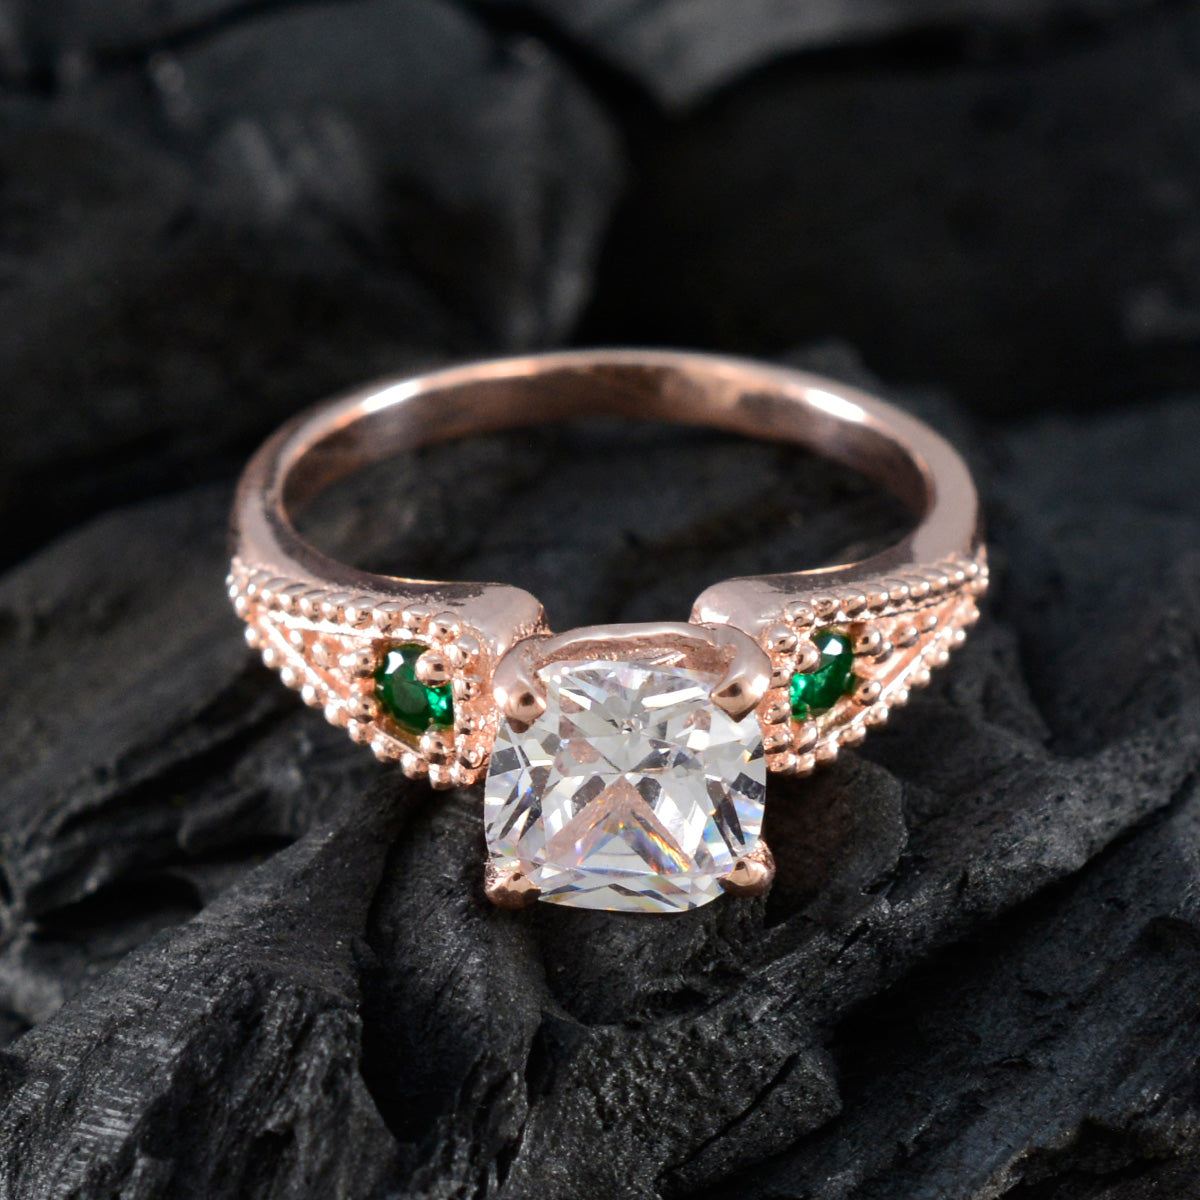 Серебряное кольцо Riyo желательно с покрытием из розового золота, изумрудный камень cz, в форме зубца, свадебные украшения, кольцо на День Святого Валентина